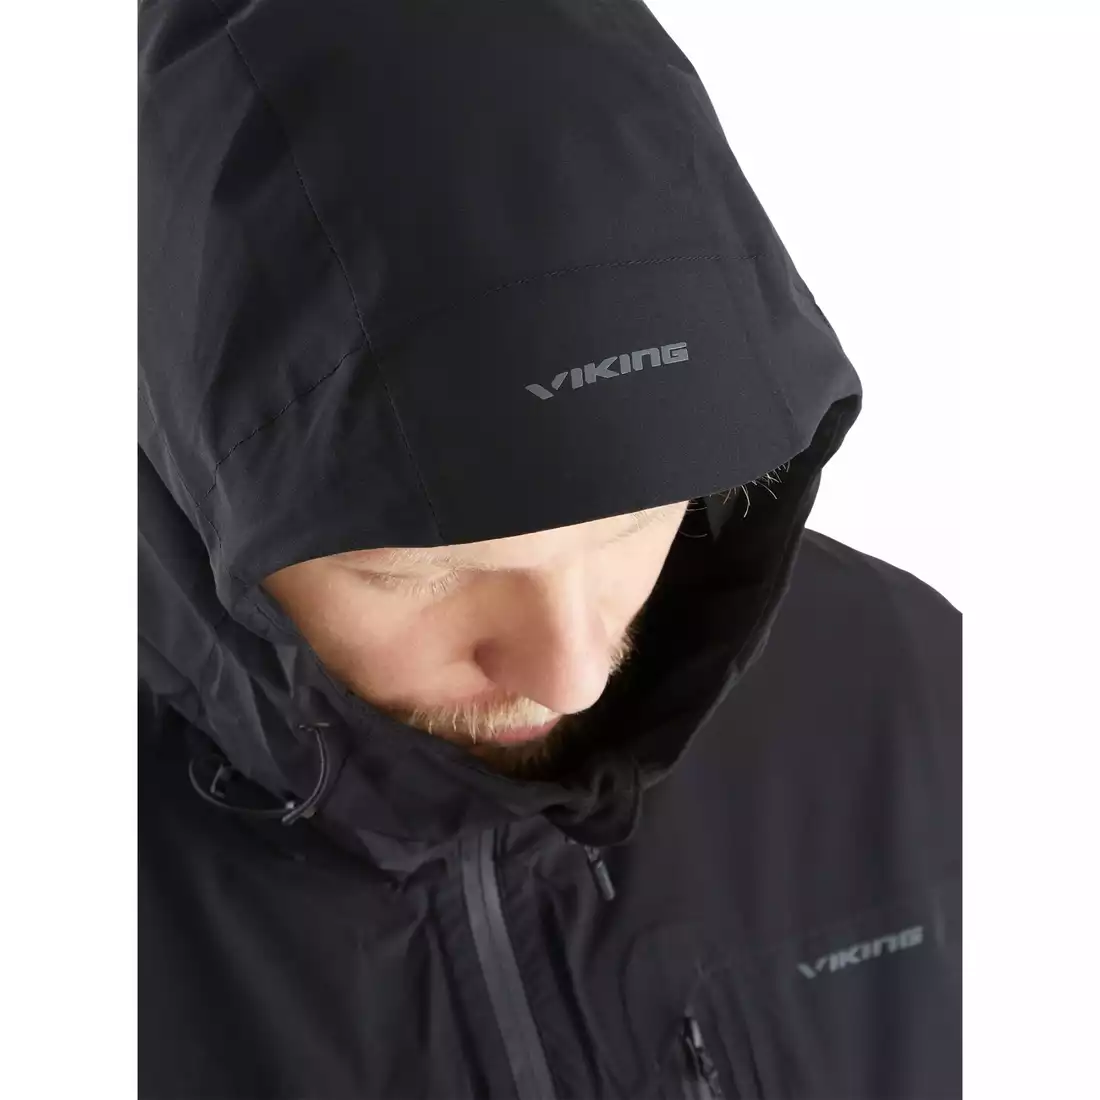 Men's rain jacket Viking Trek Pro Man 700/23/0905 black